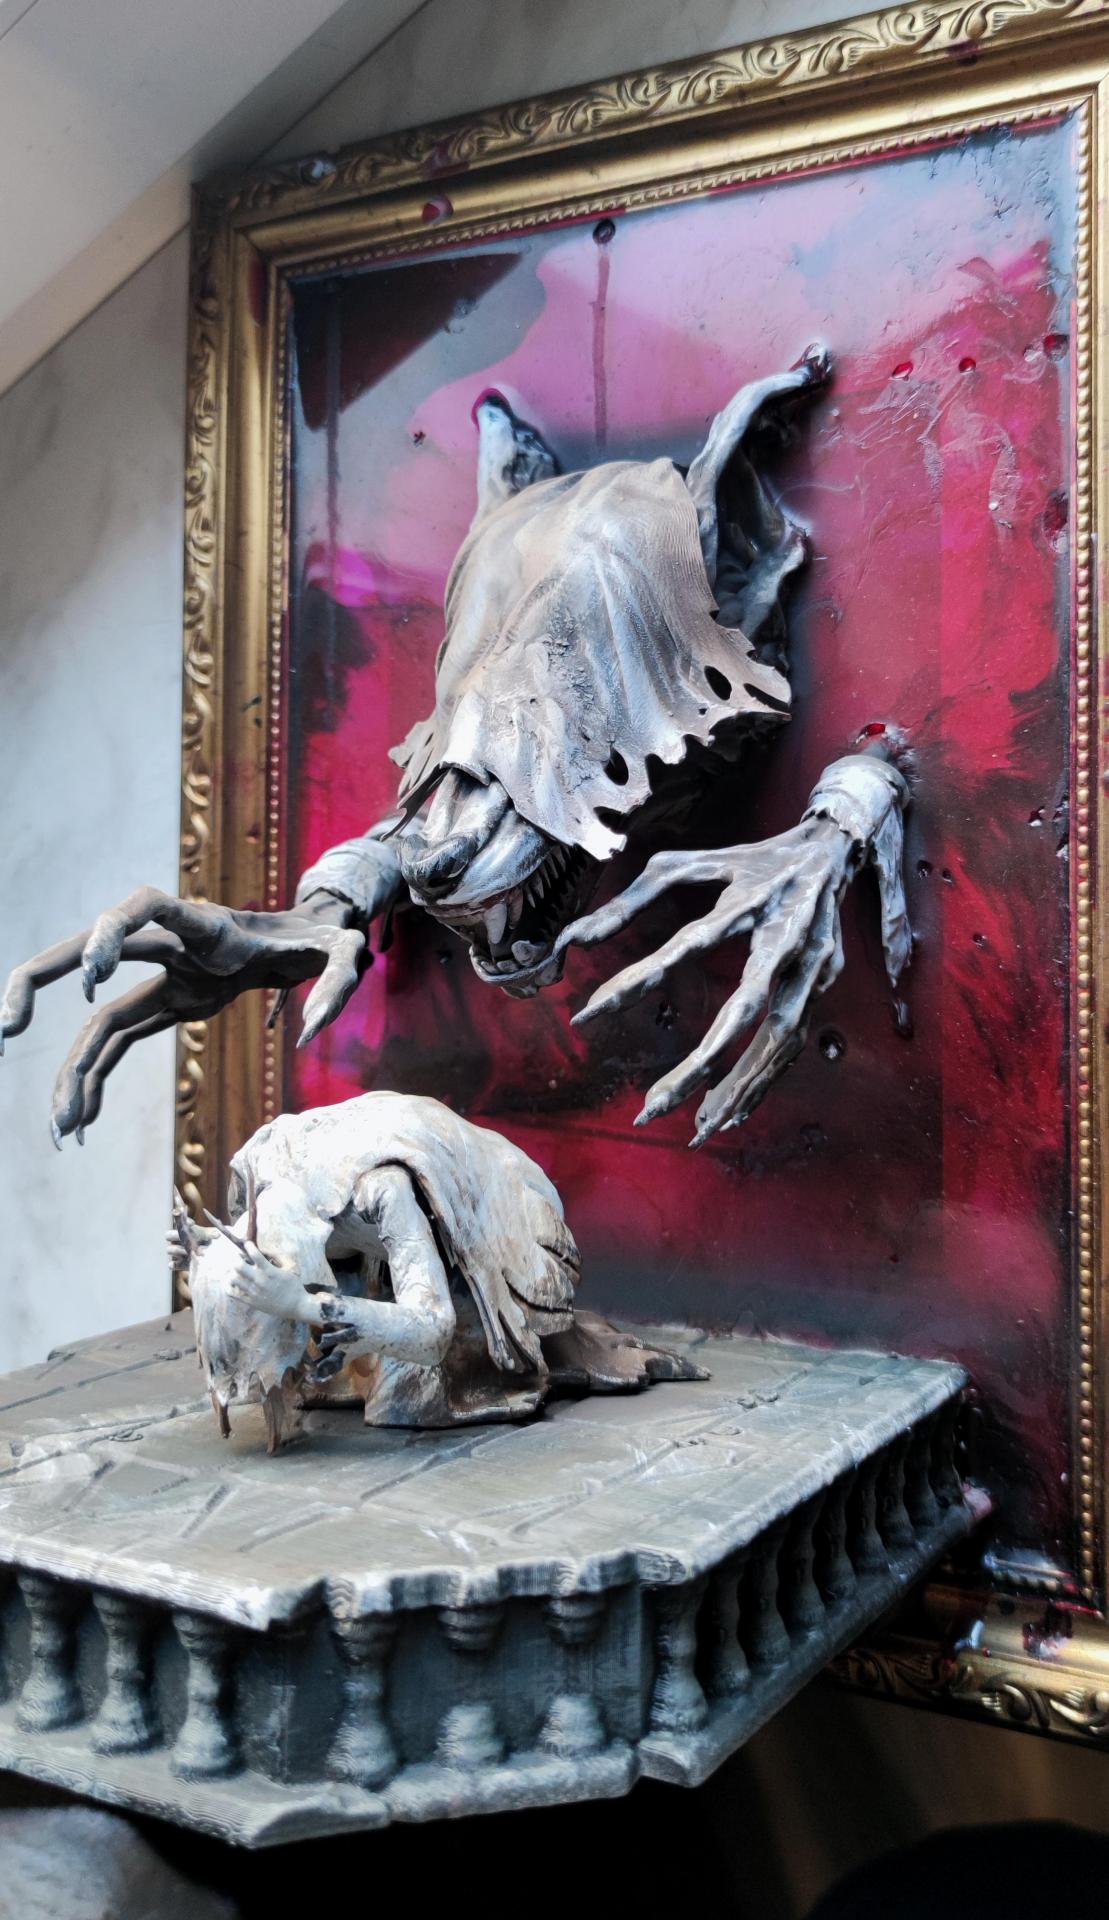 Художник сделал уникальную 3-D картину под впечатлением от Bloodborne. Фанаты уже просят продать ее